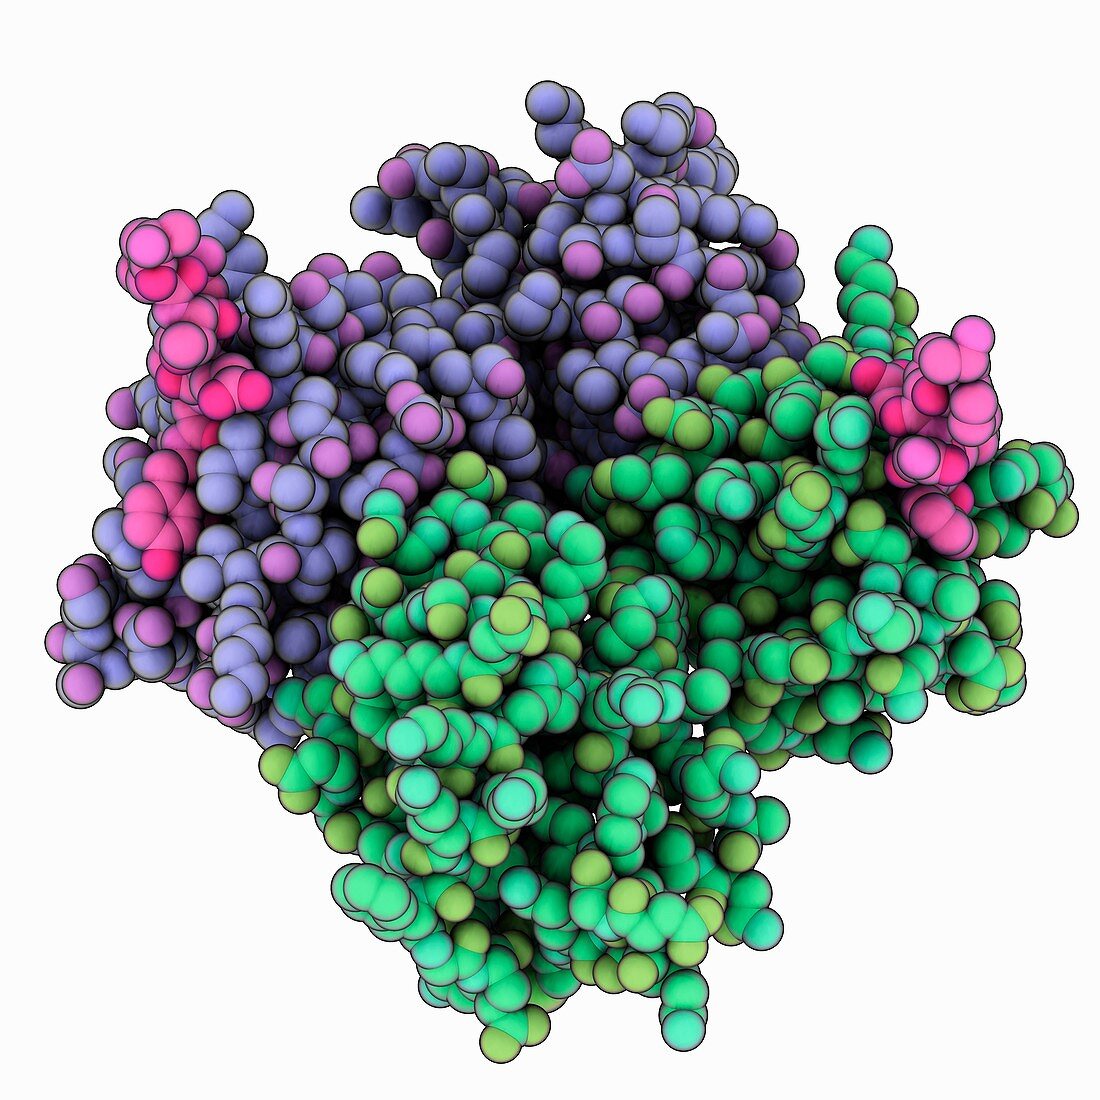 Syntenin-1 PDZ-domain complex